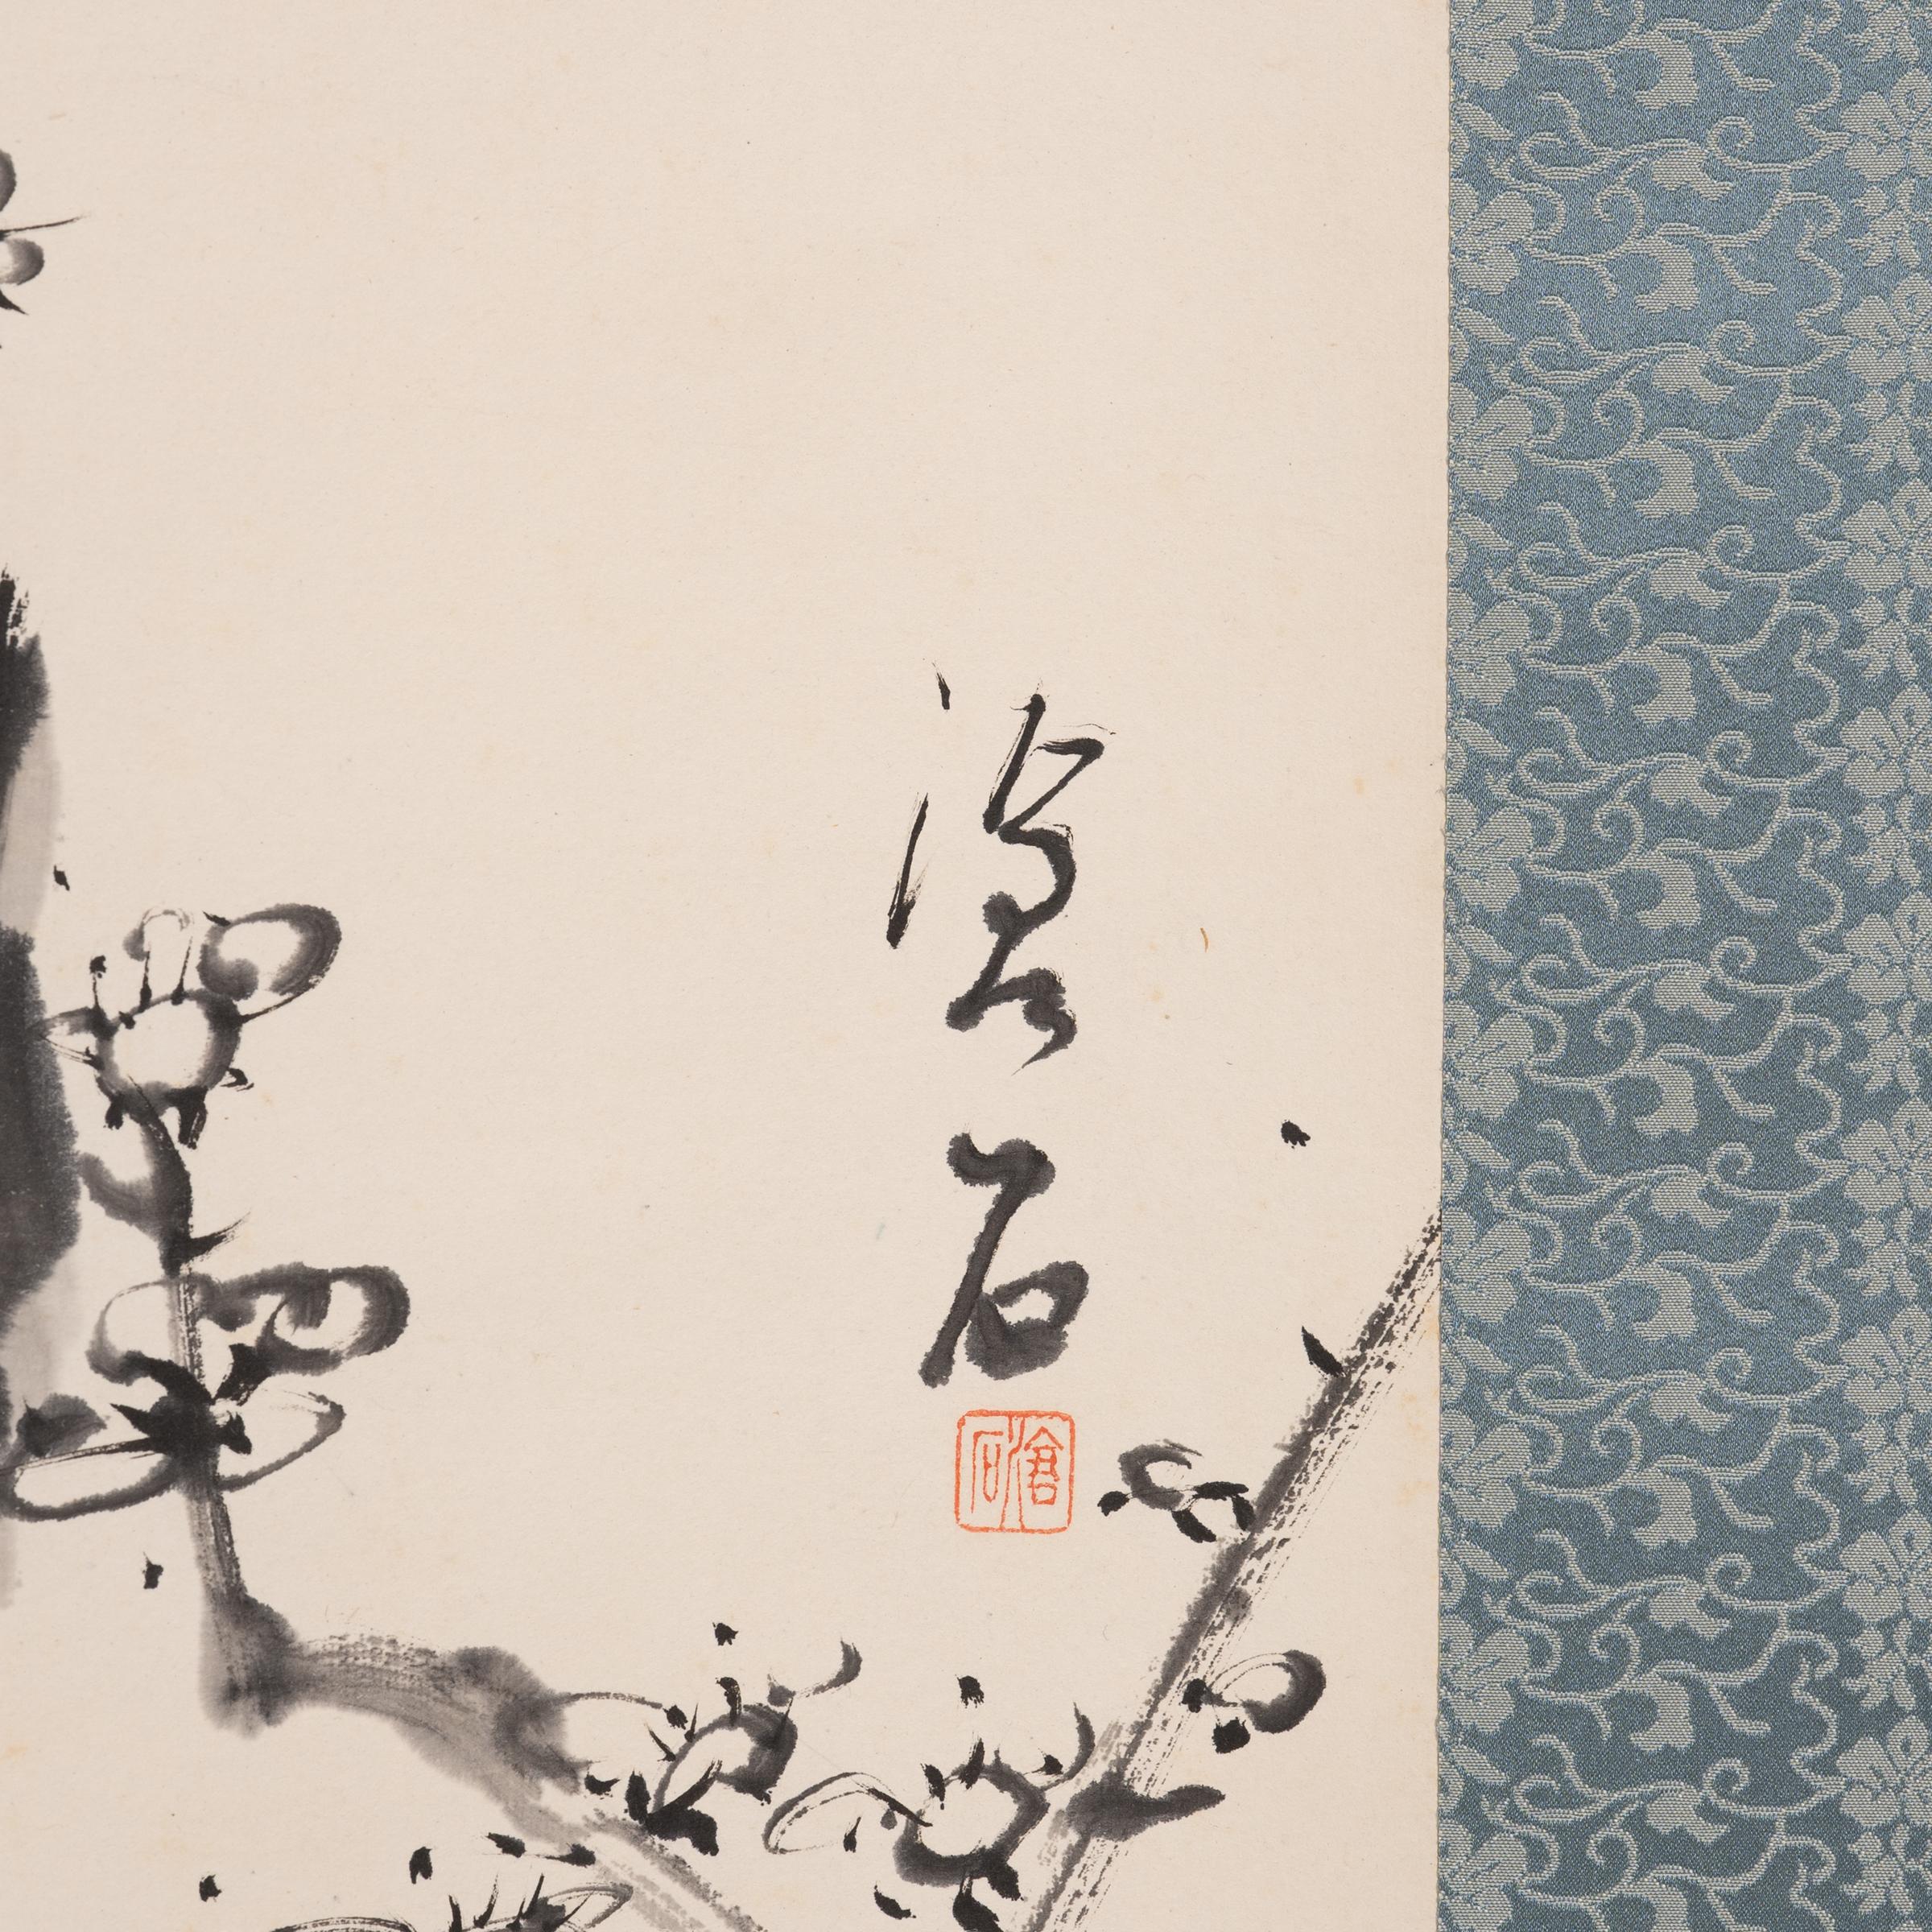 Diese koreanische Hängerolle aus der Mitte des 20. Jahrhunderts ist eine Hommage an die traditionelle Kalligraphie mit feinen Details und einer raffinierten Komposition, die zu einem klaren und präzisen Denken anregen soll. Um die Schönheit und